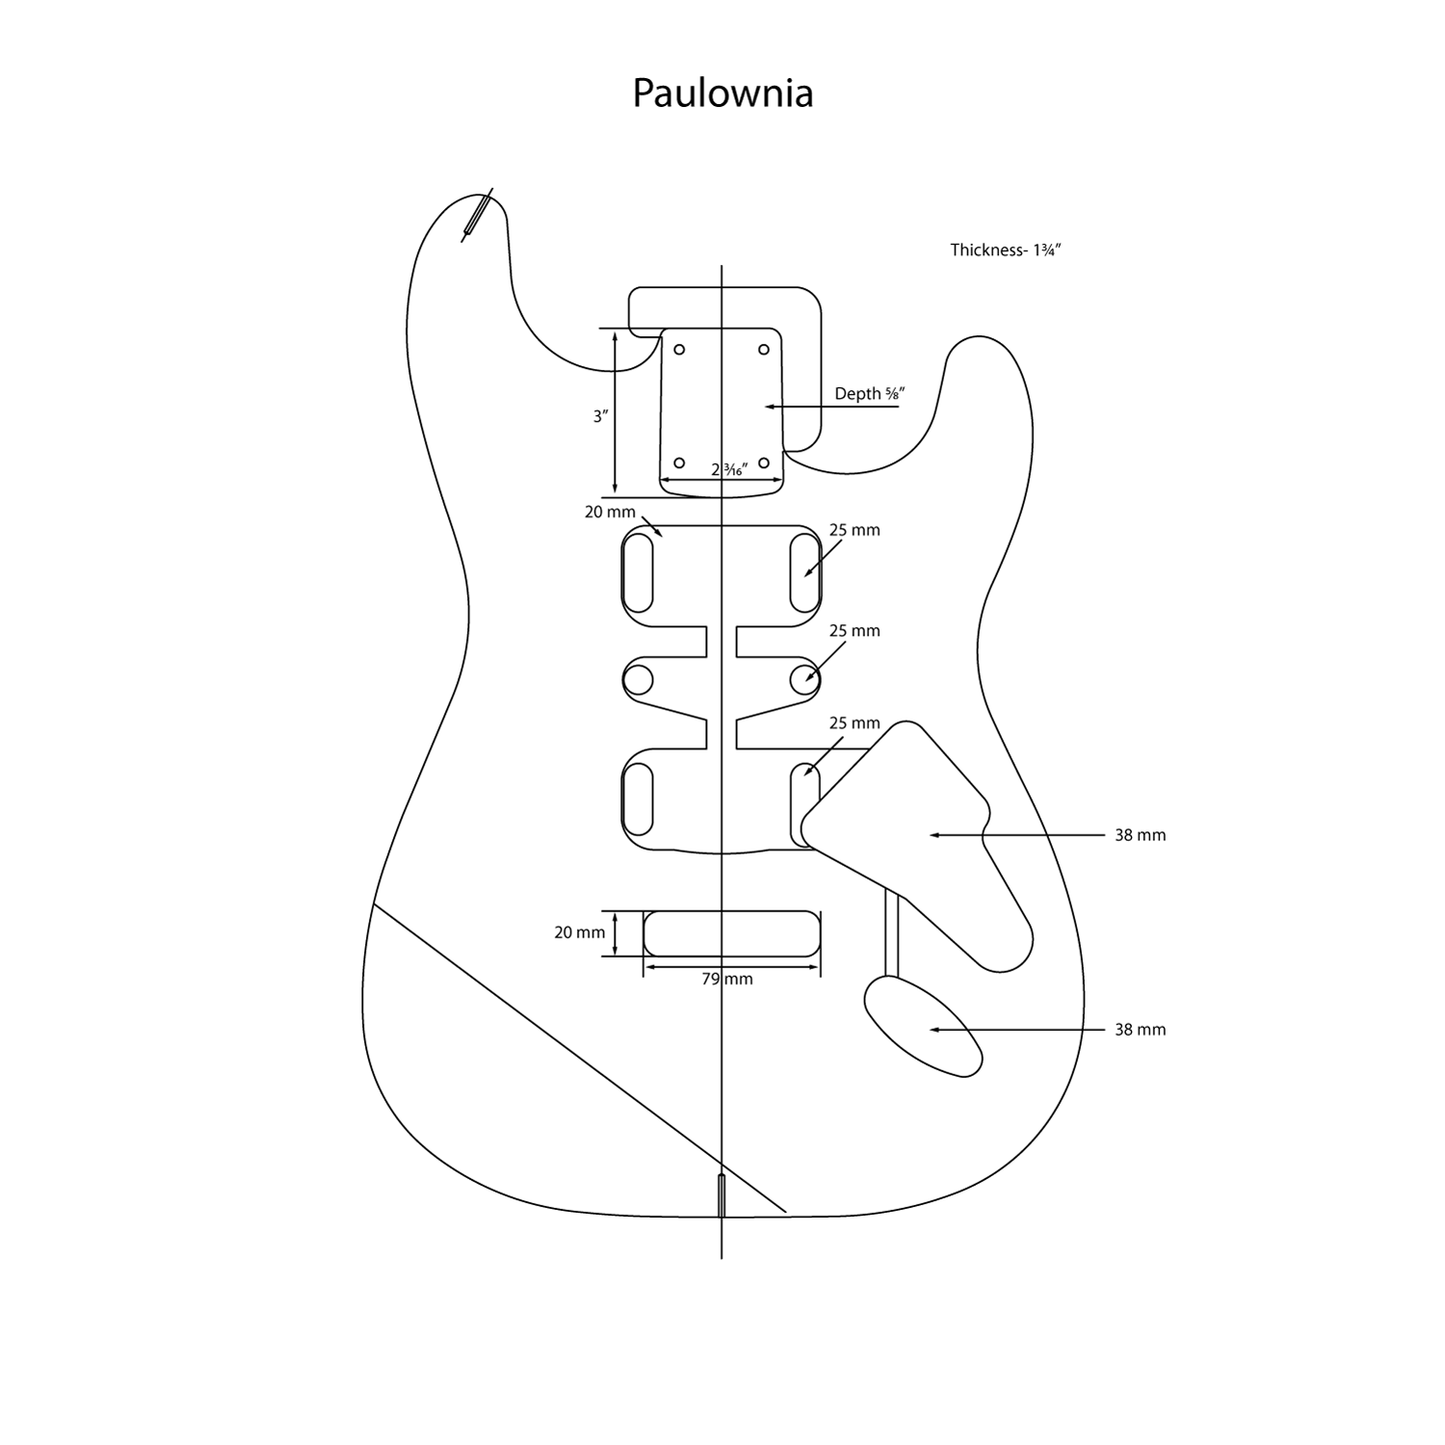 AE Guitars® S-Style Paulownia Replacement Guitar Body 3 Tone Sunburst